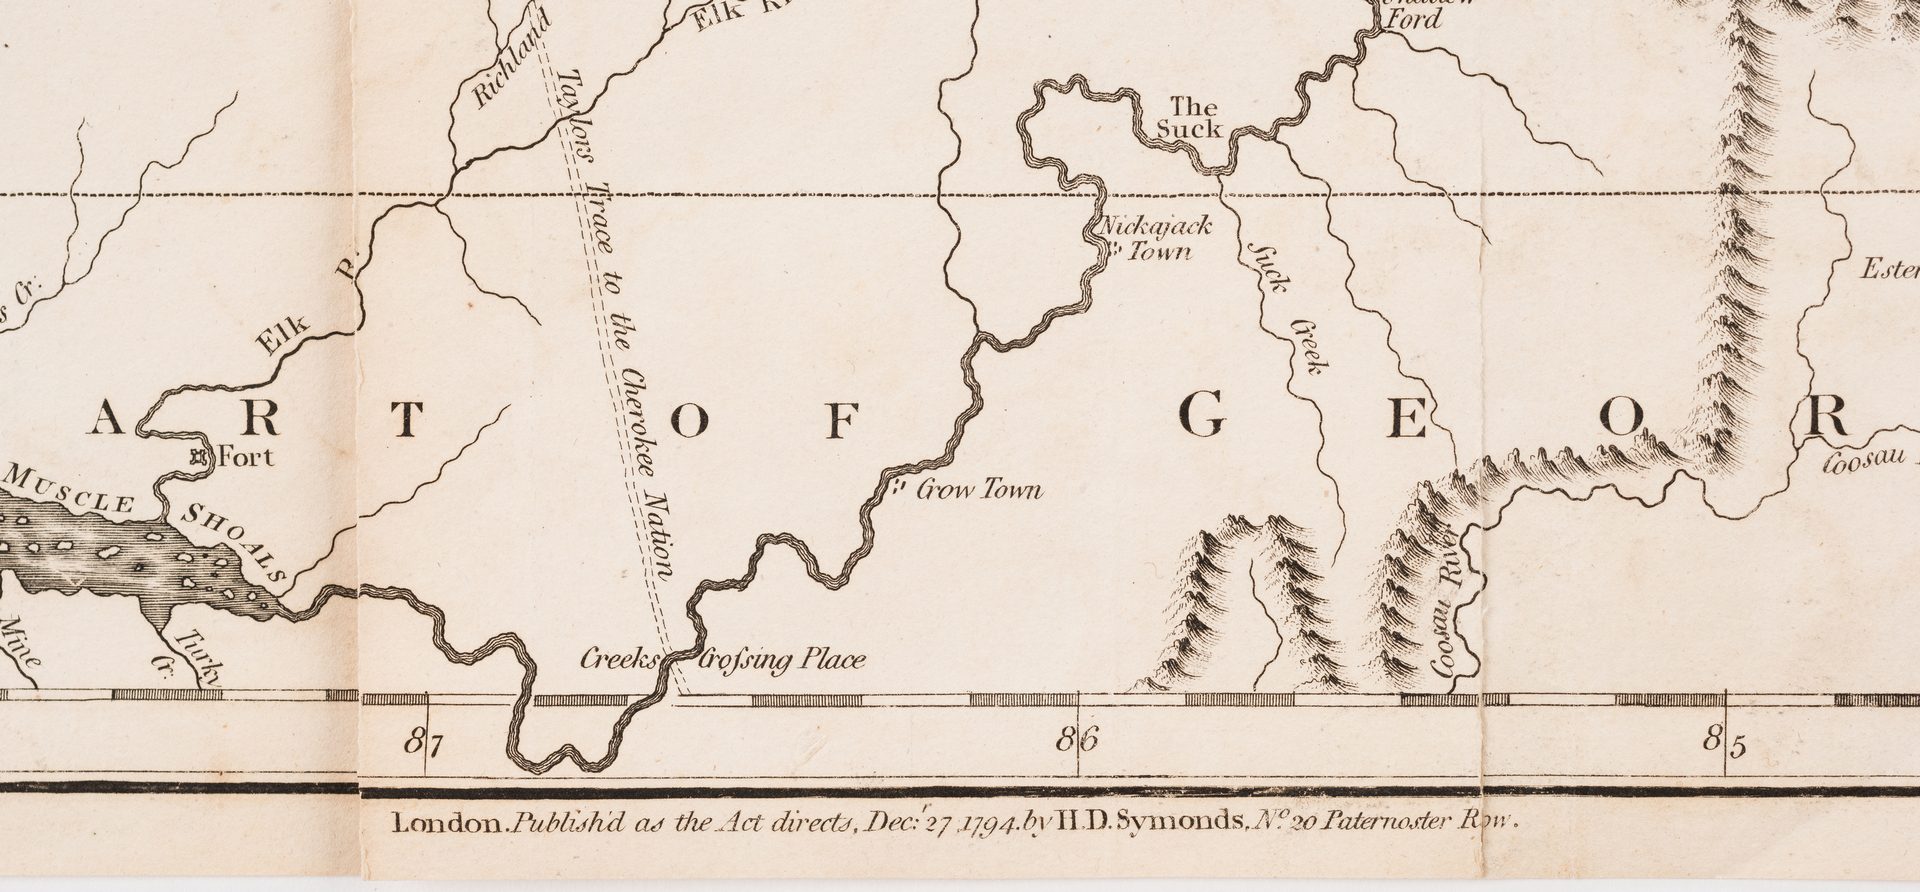 Lot 290: Kentucky Map, J. Russell, 1794